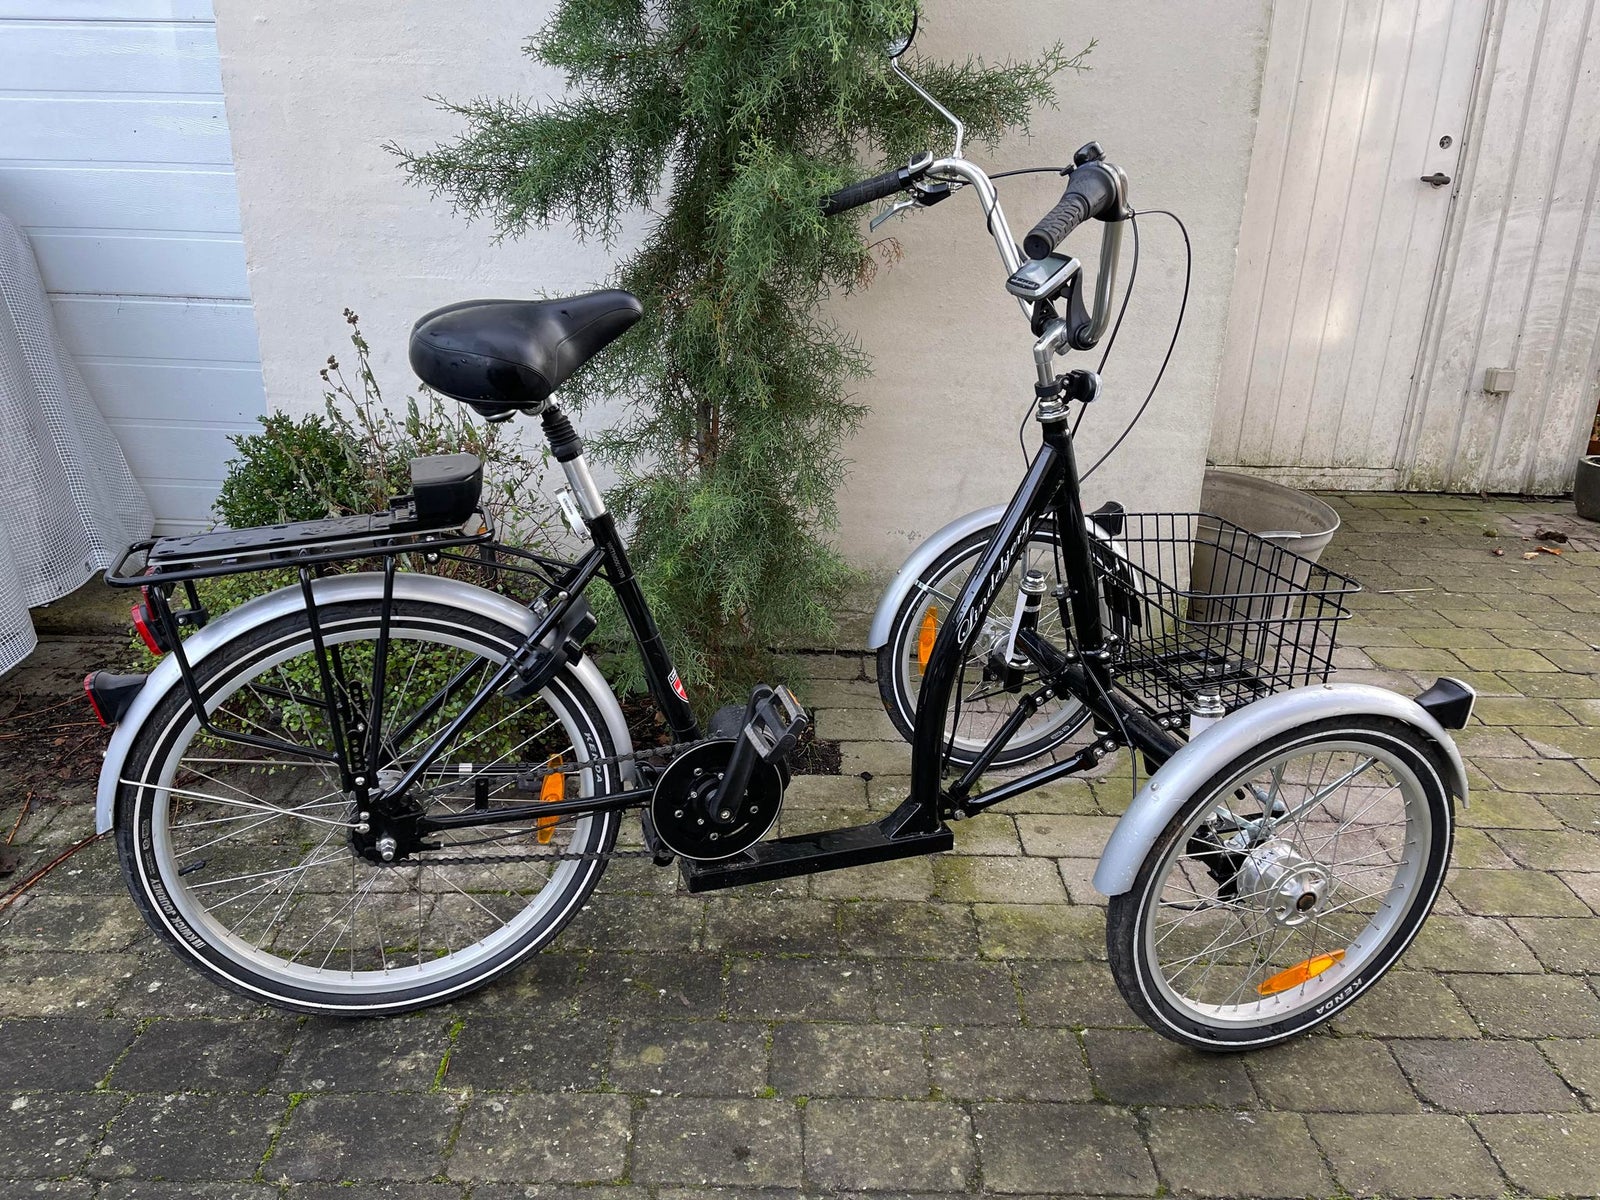 Halv pris! Lindebjerg Senior El cykel